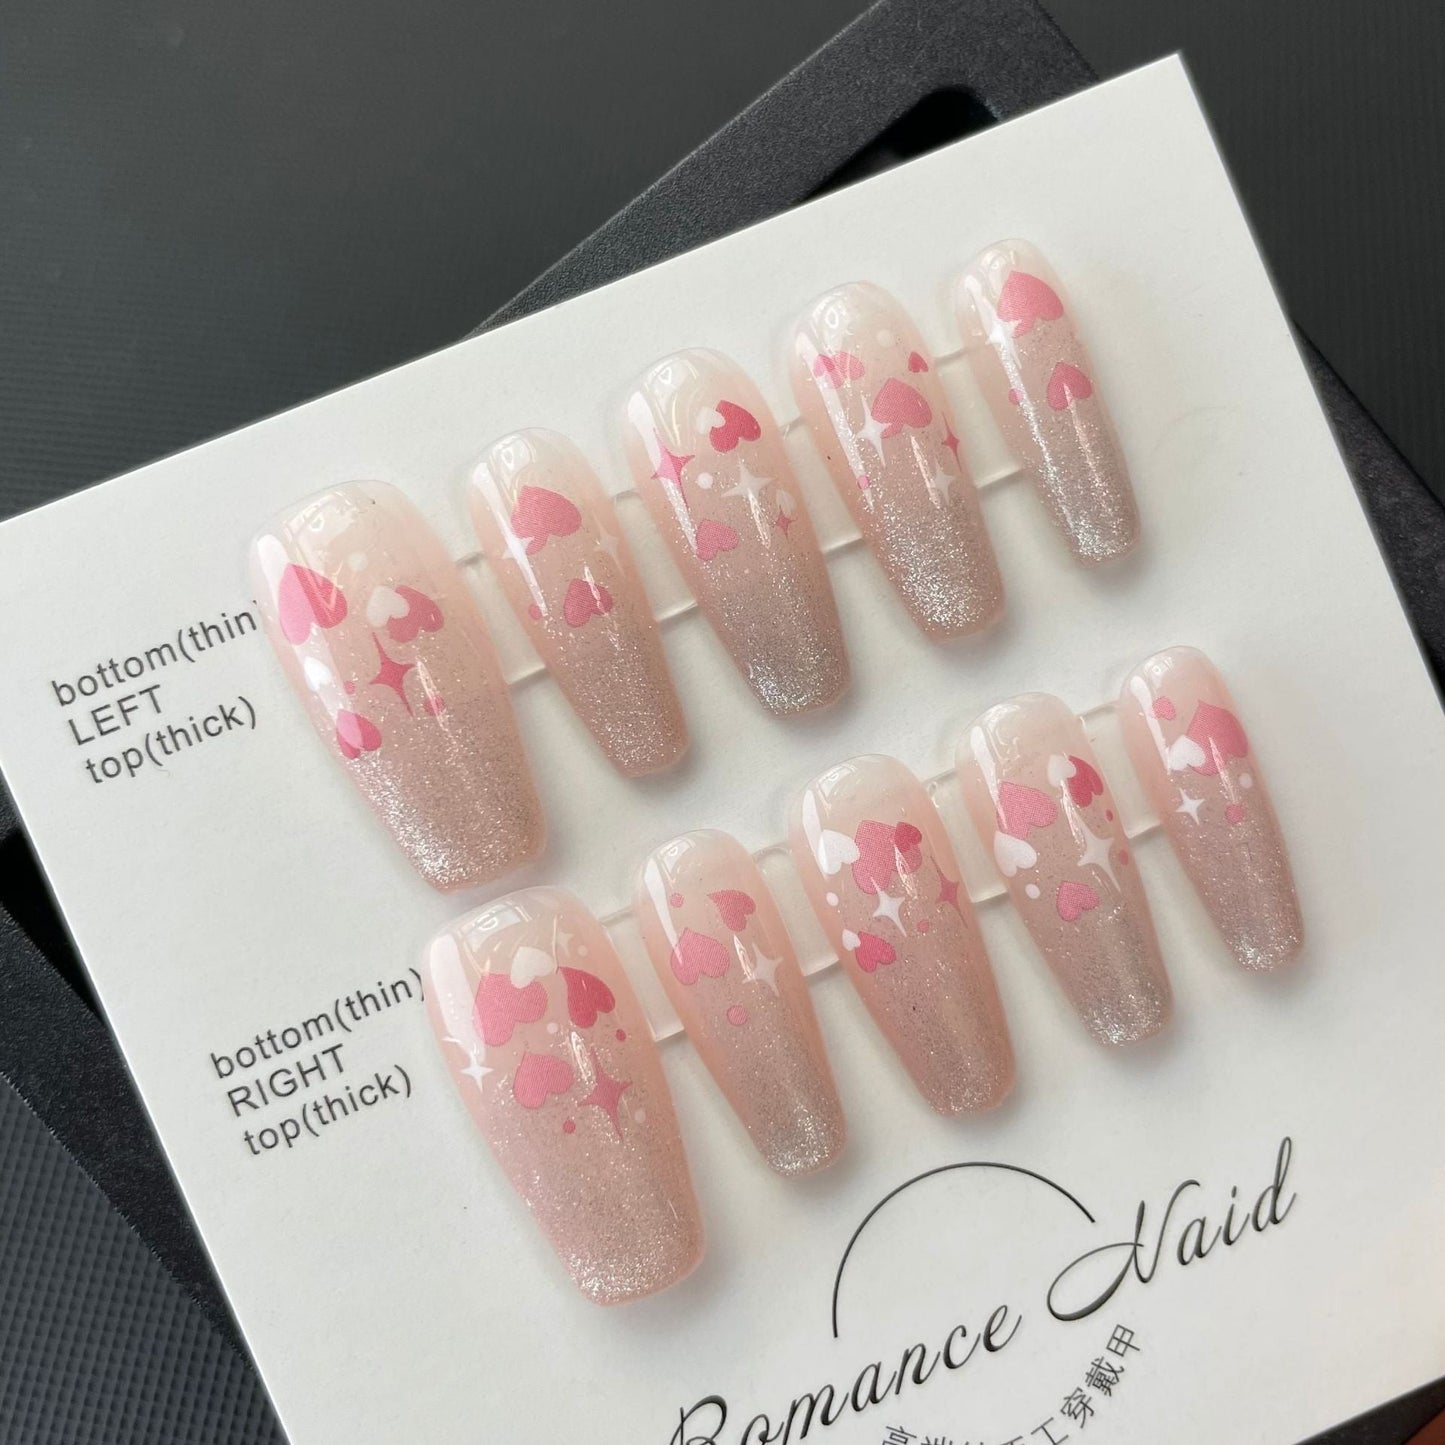 702 Peach Love style presse sur ongles 100% faux ongles faits à la main rose